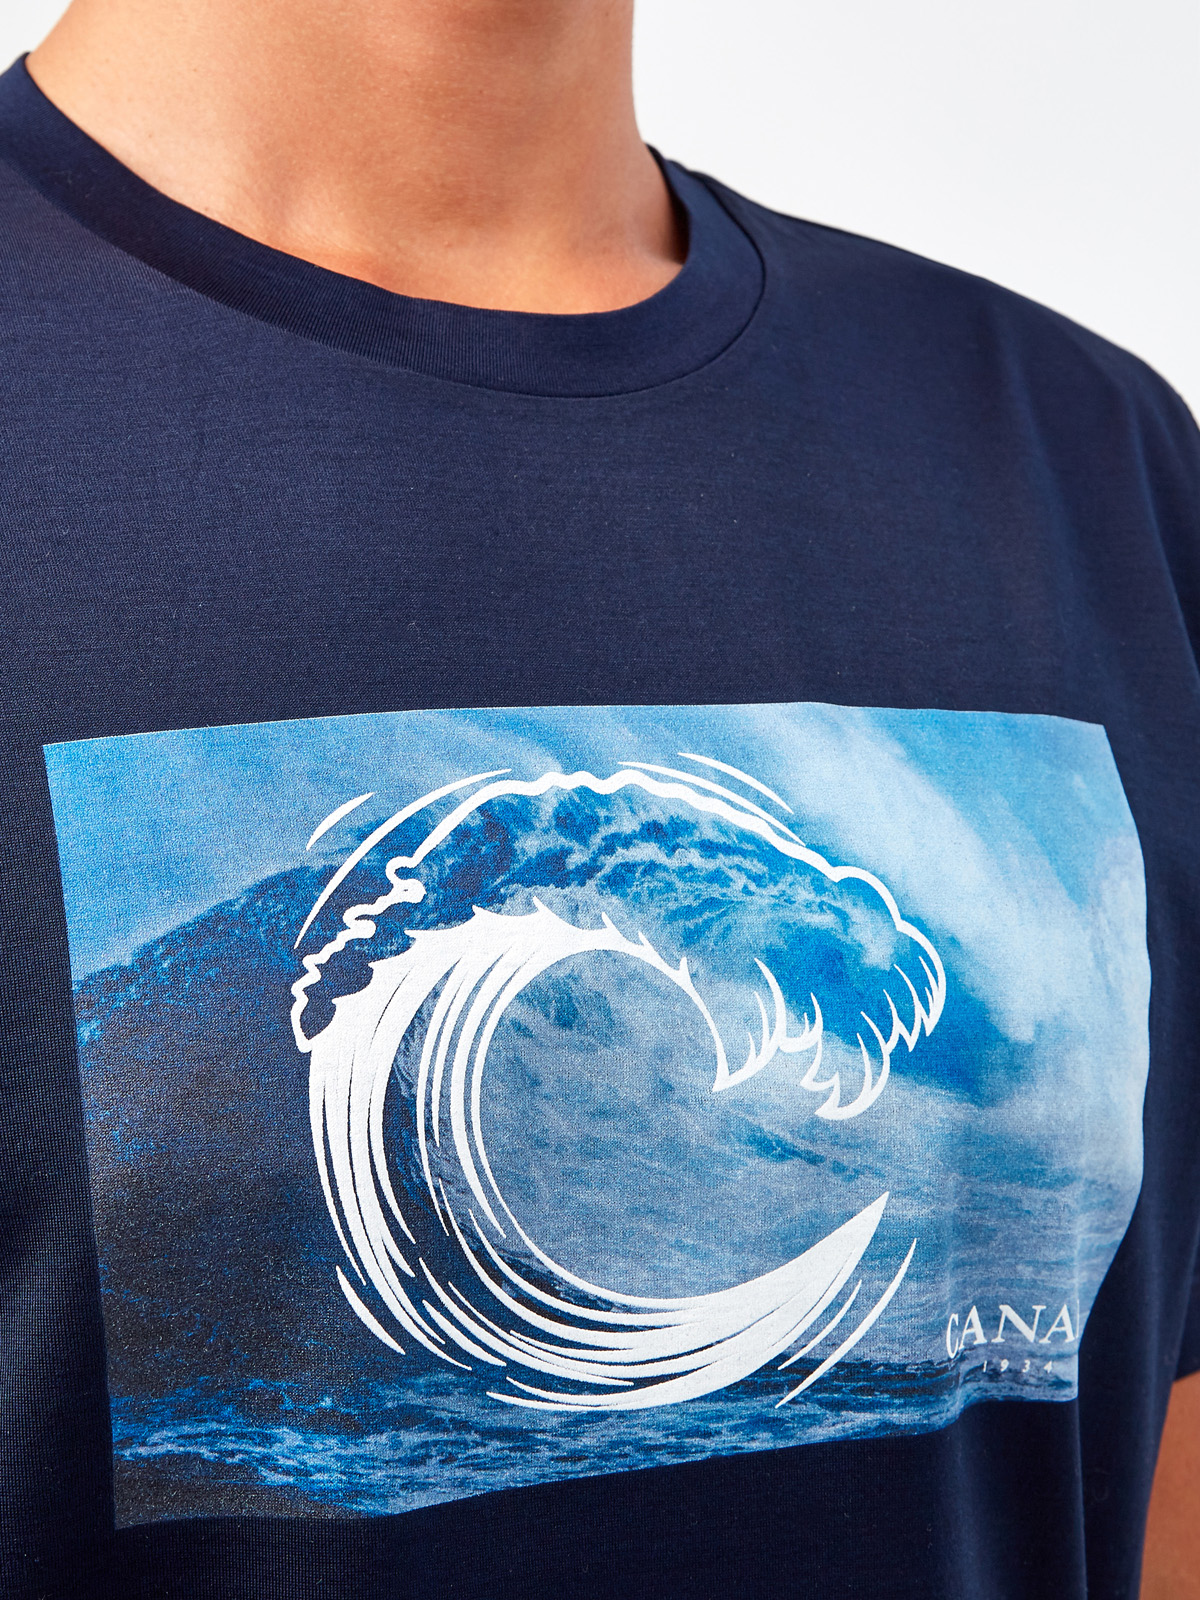 Хлопковая футболка с принтом в технике горячей печати CANALI, цвет синий, размер 56;58;60;50;52;54 - фото 5